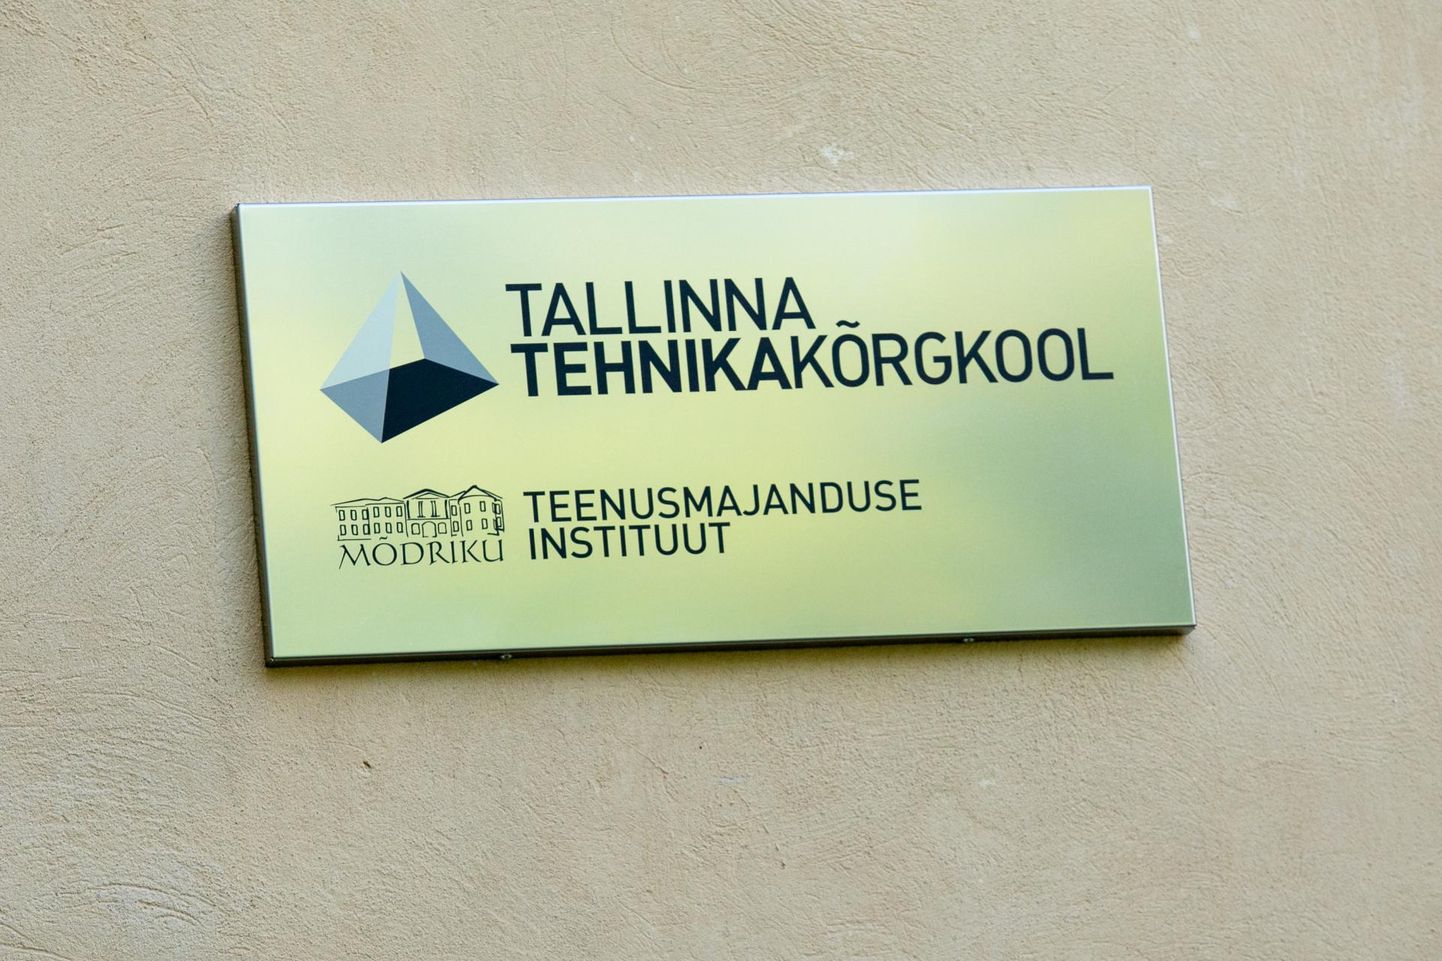 Kõikidele Tallinna tehnikakõrgkooli teenusmajanduse instituudi erialadele laekus avaldusi rohkem kui mullu.